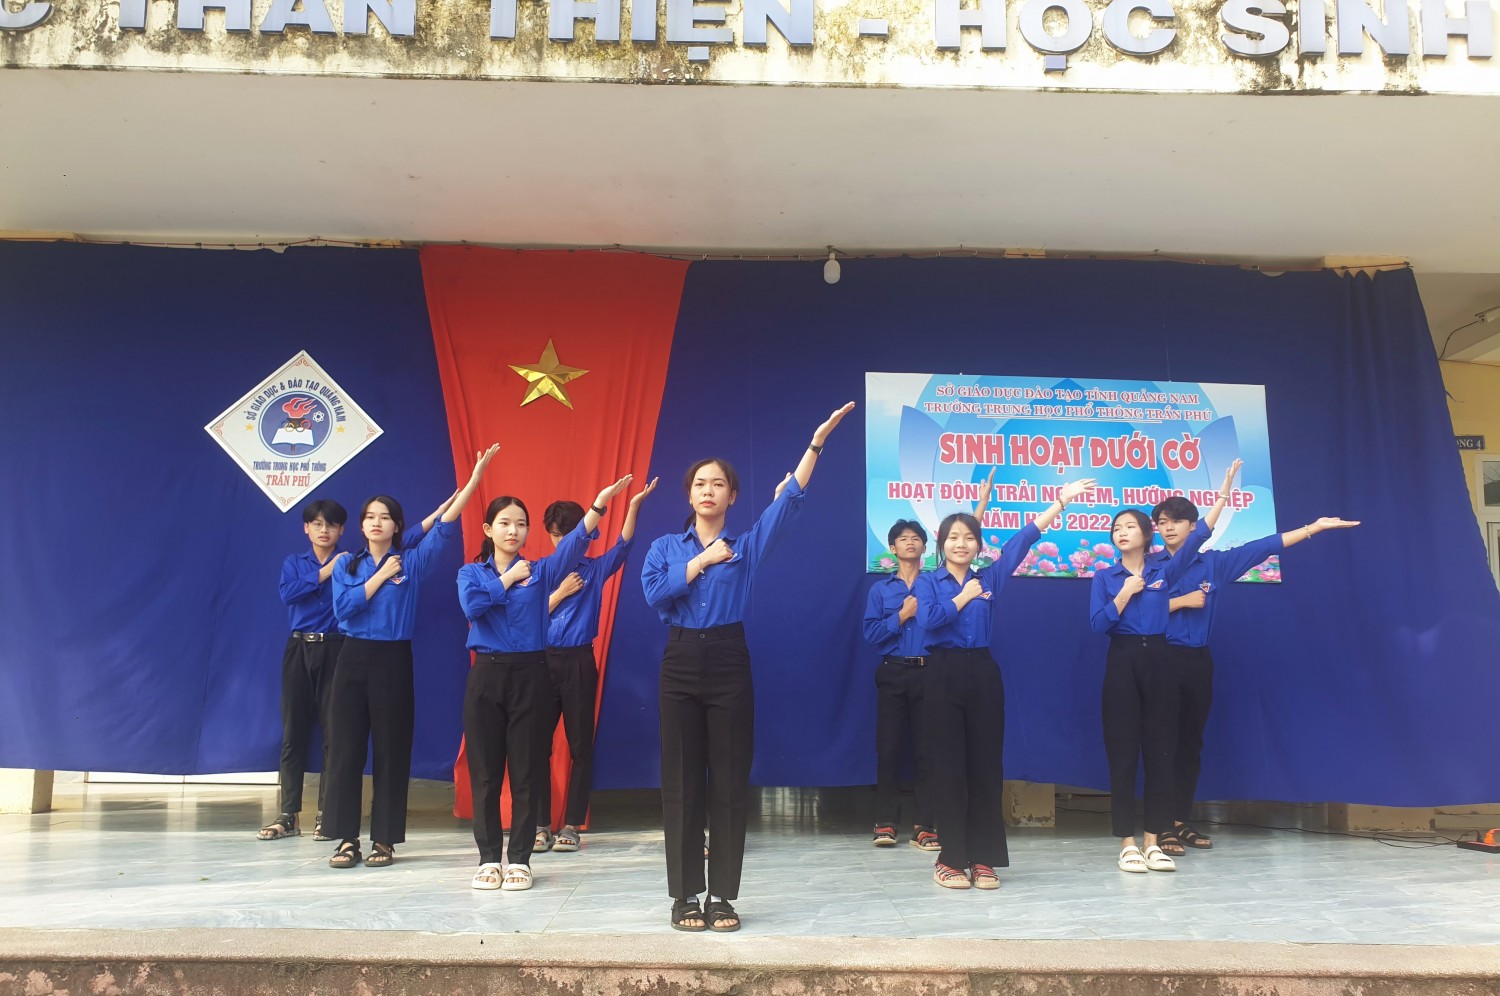 Trường THPT Trần Phú tổ chức sinh hoạt dưới cờ hoạt động trải nghiệm, hướng nghiệp